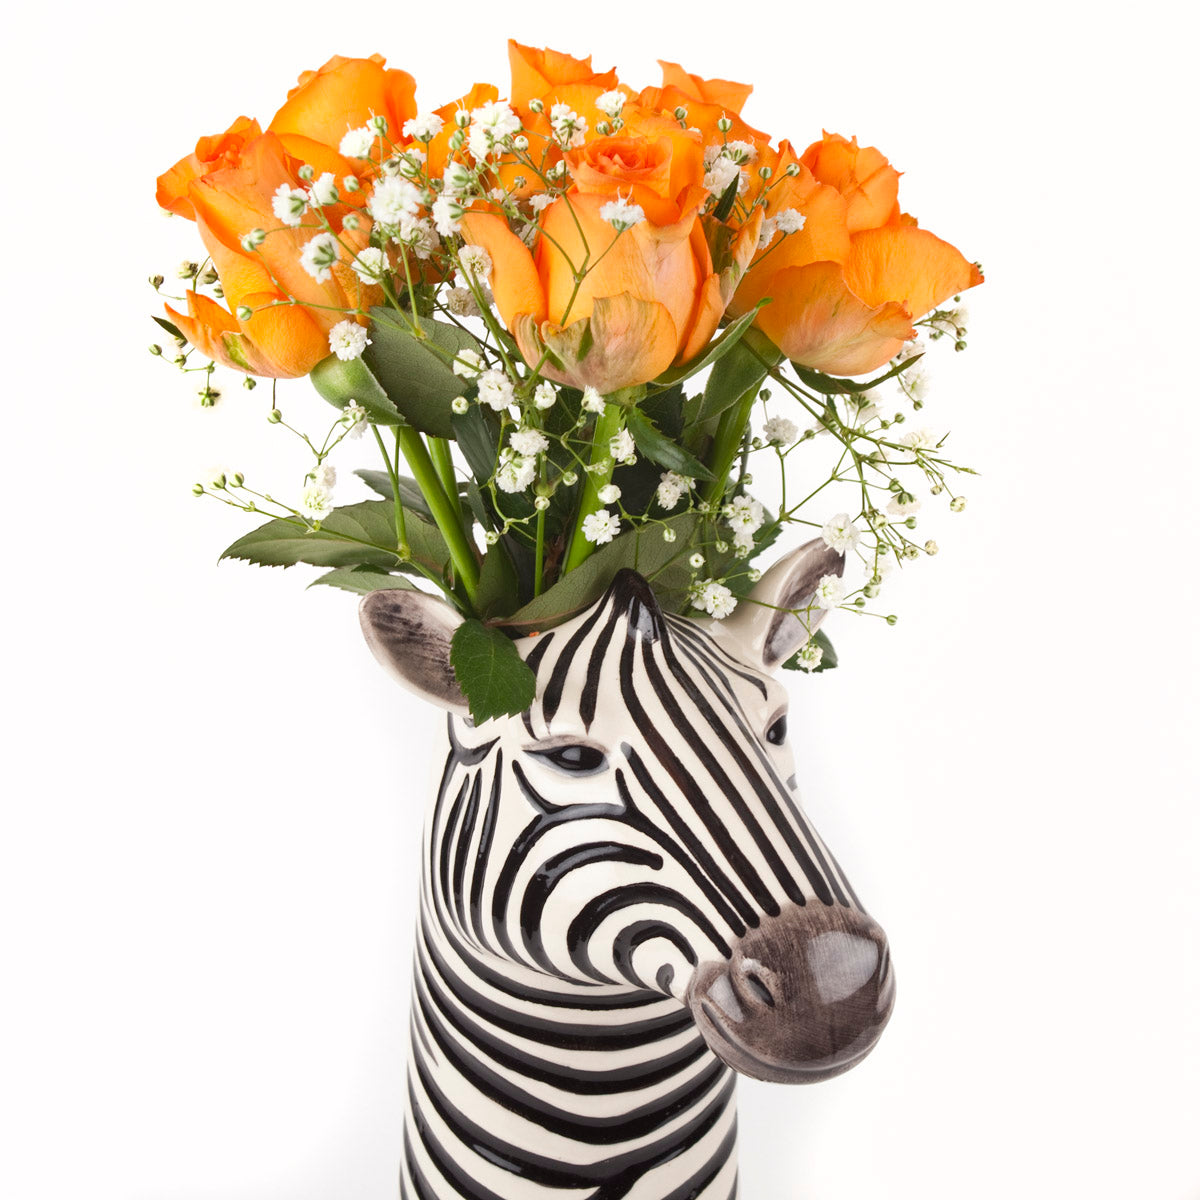 Zebra flower vase (24 cm)